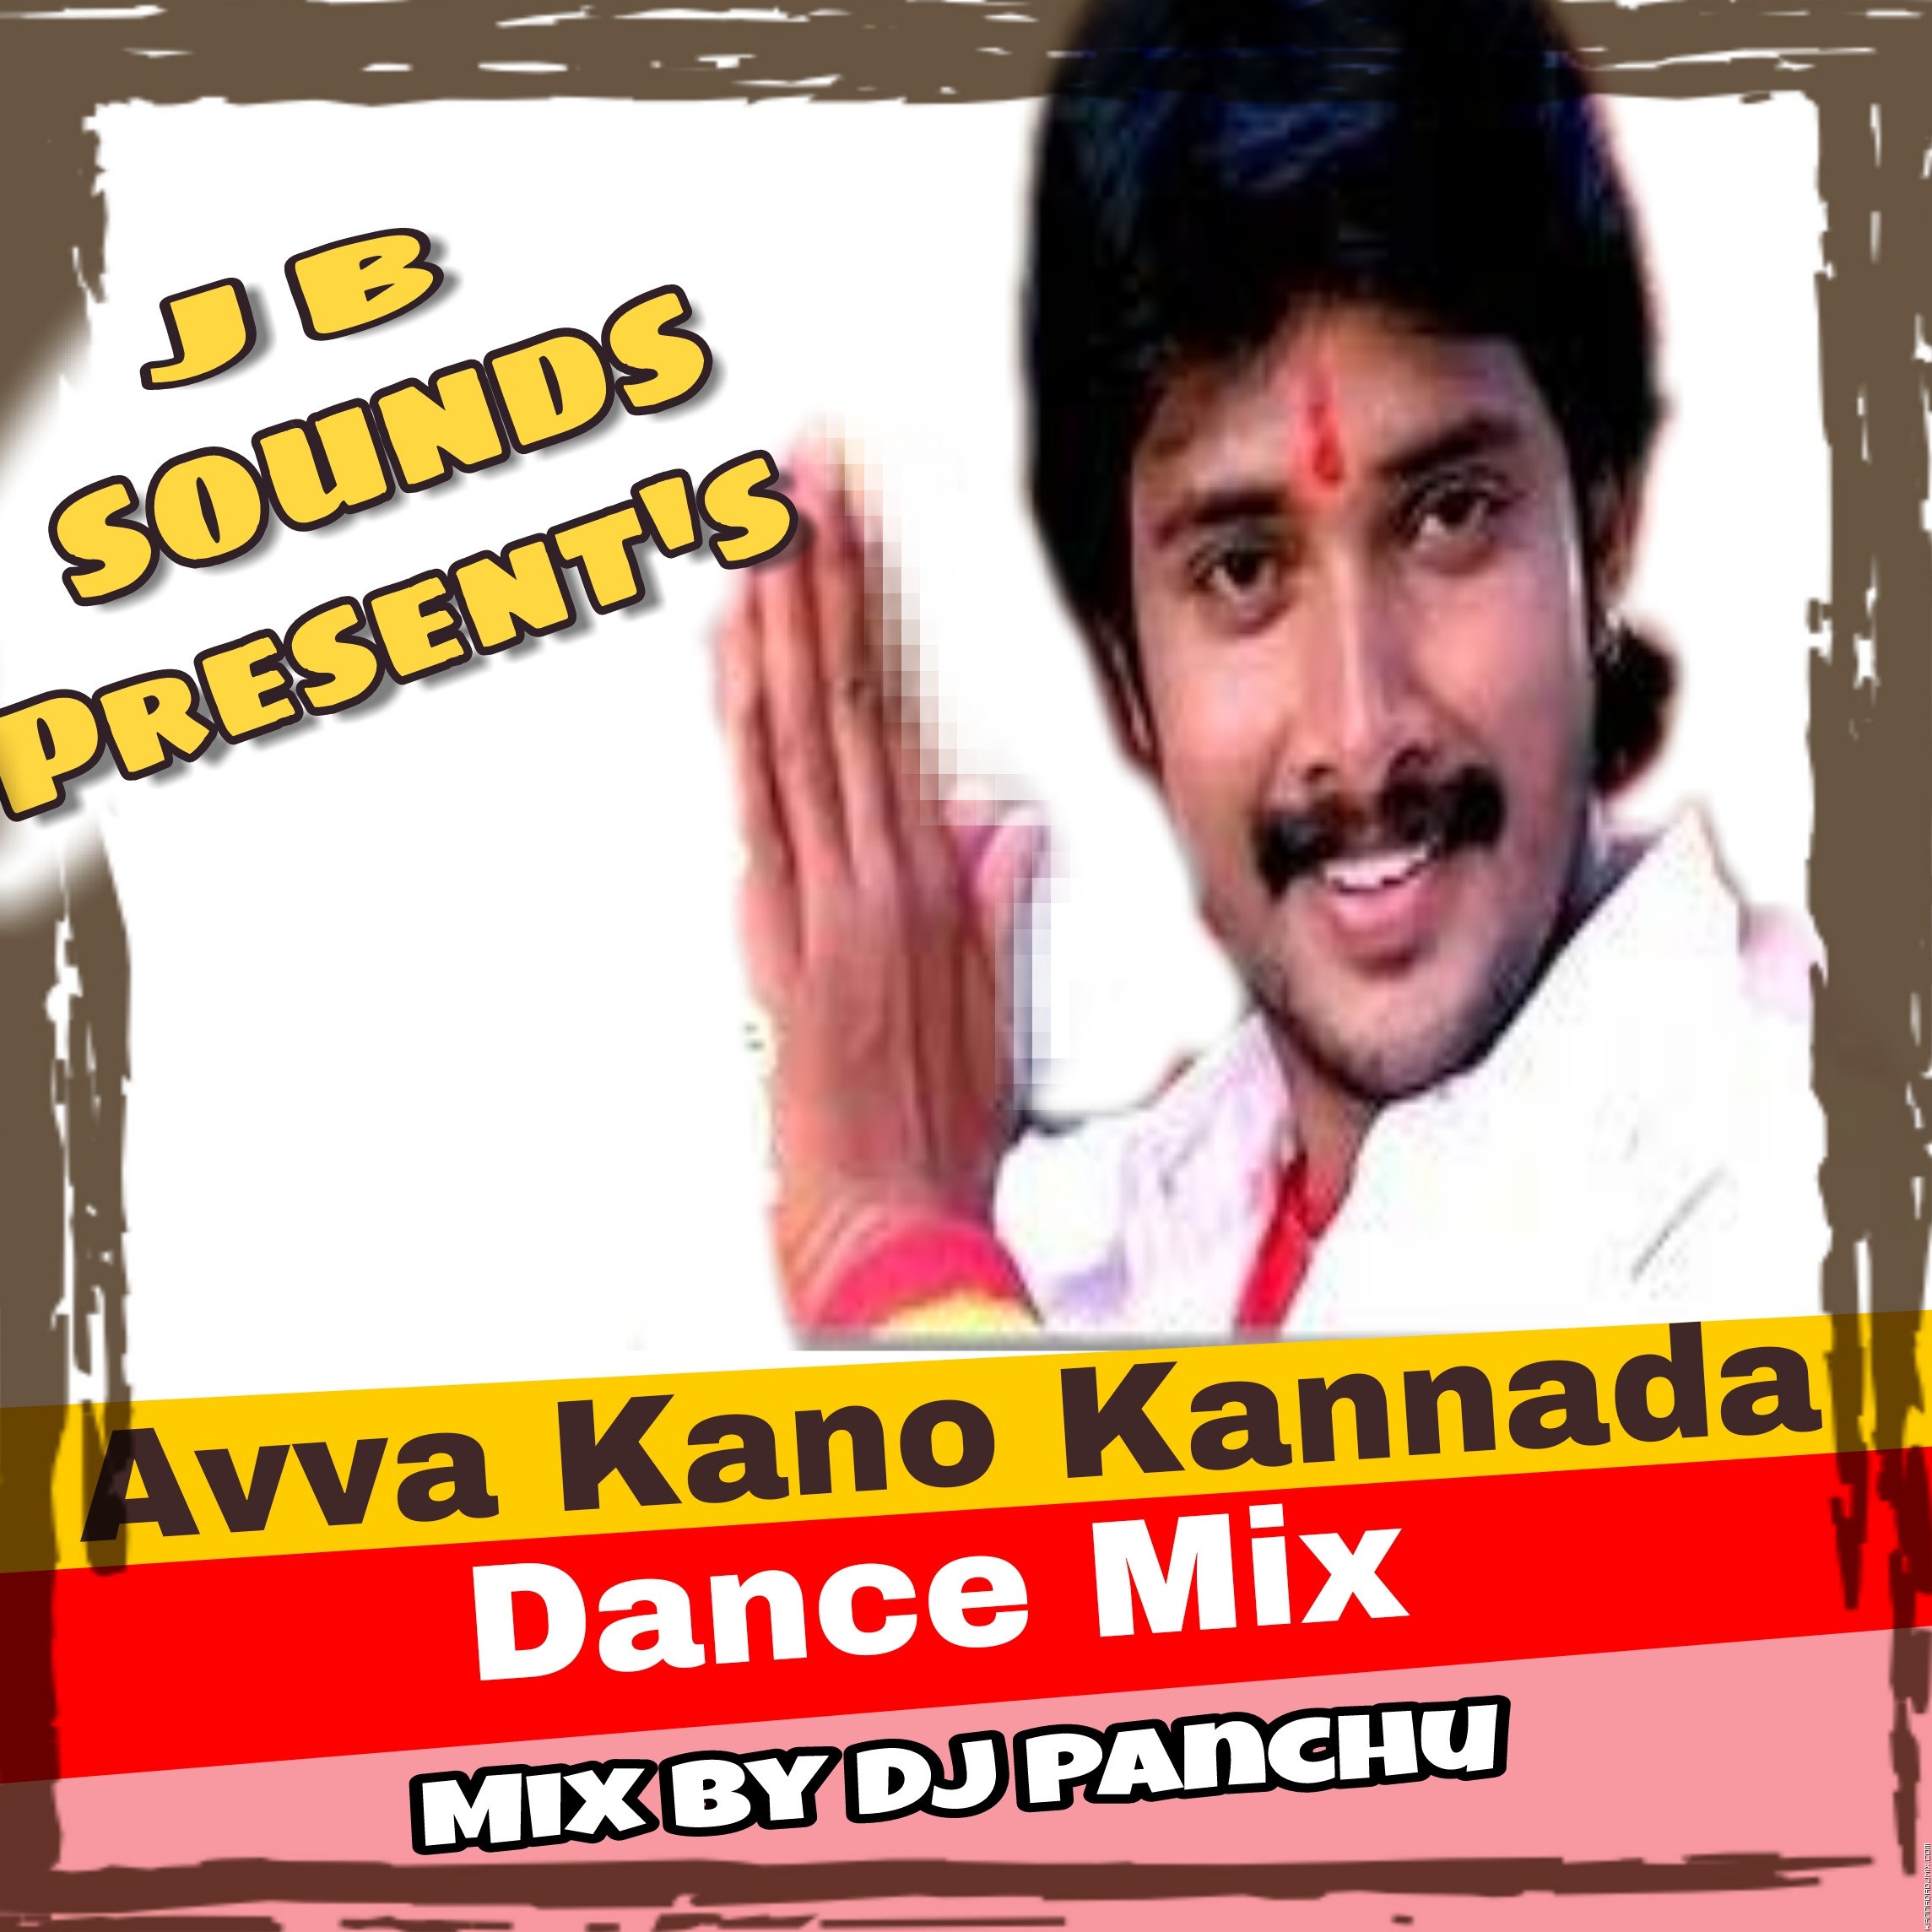 AVVA KANO KANNADA [DANCE.MIX] DJ PANCHU.mp3